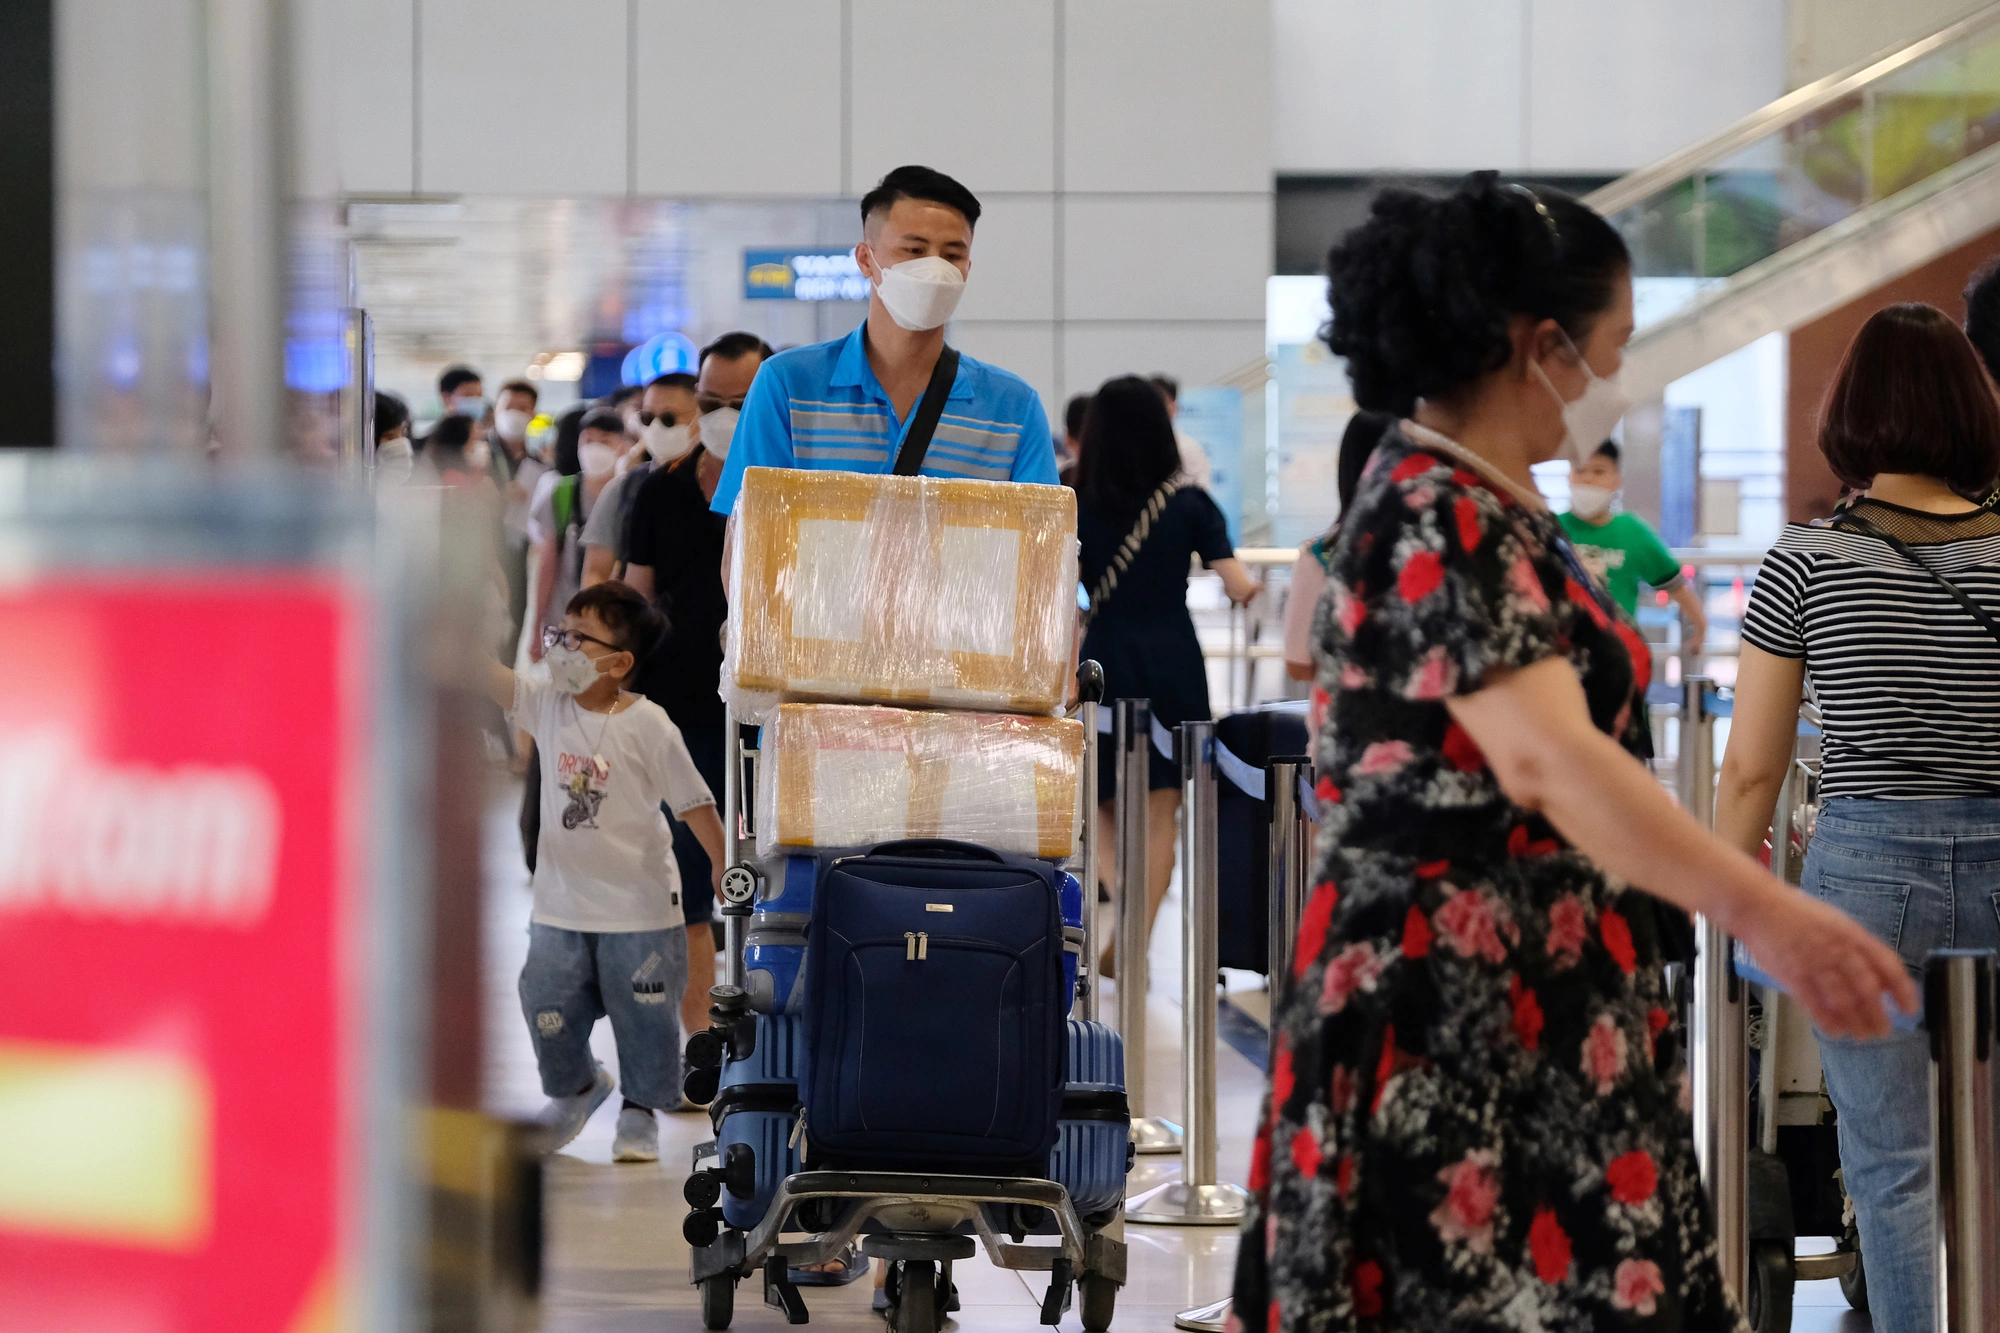 Sân bay Nội Bài đông đúc trước ngày nghỉ lễ, người người nhà nhà đi lu lịch sau tròn 1 năm làn sóng dịch lần thứ 4 - Ảnh 10.